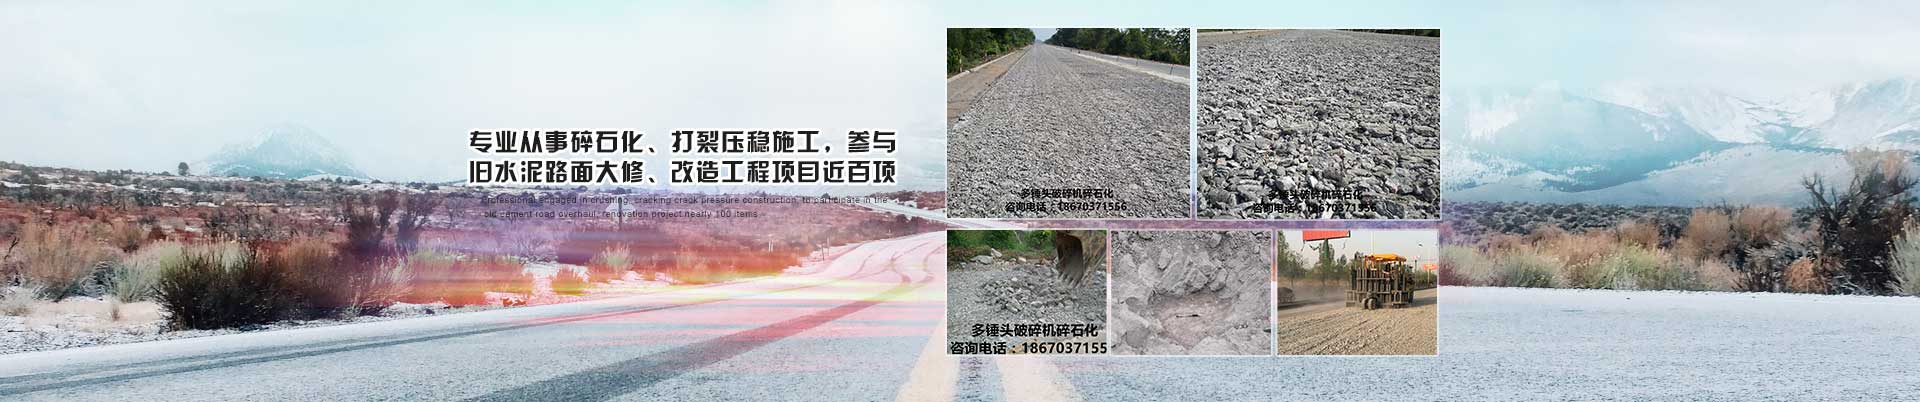 多錘(chui)頭破(po)碎機水泥路面碎石化施工